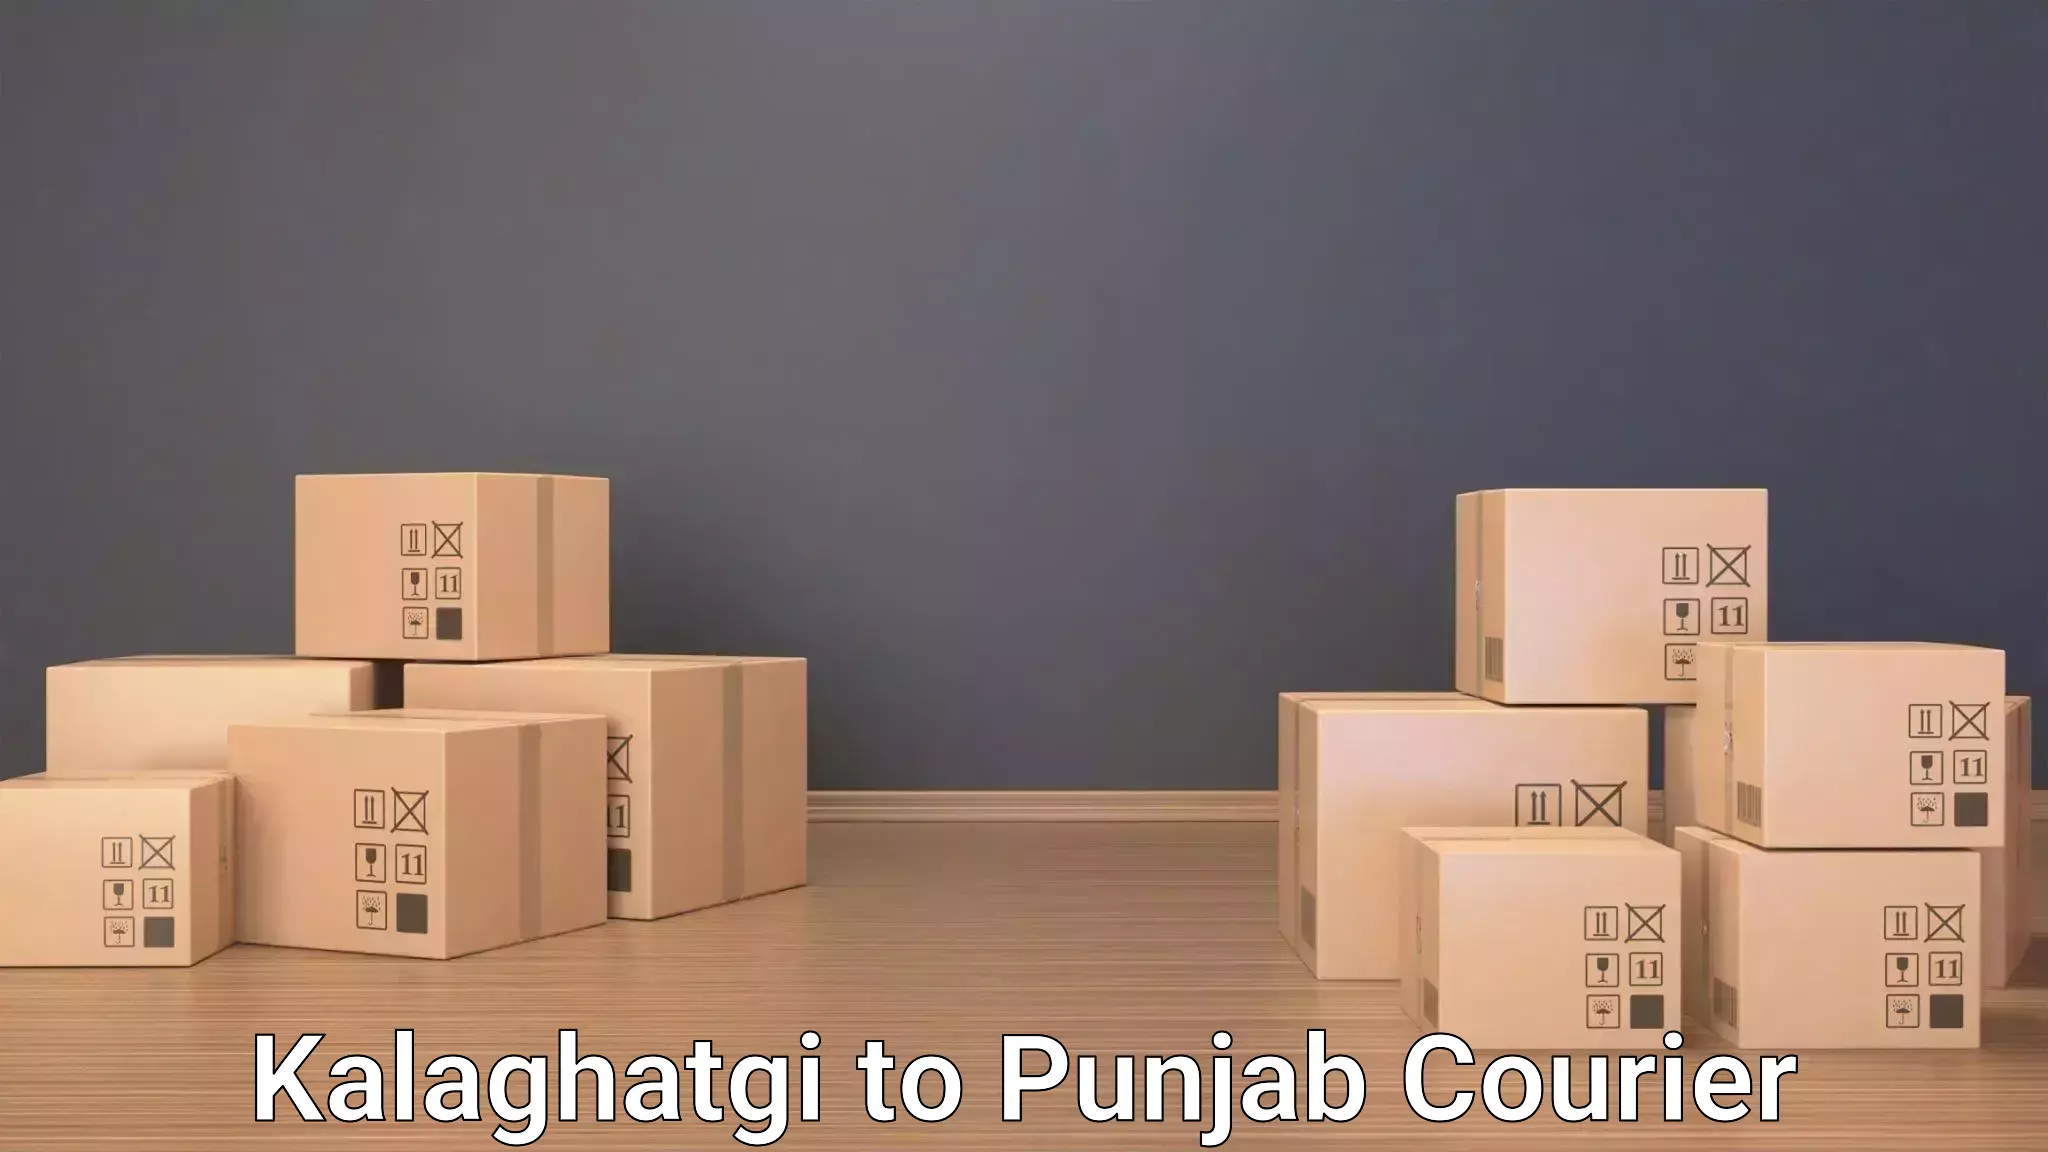 Baggage transport quote Kalaghatgi to Punjab